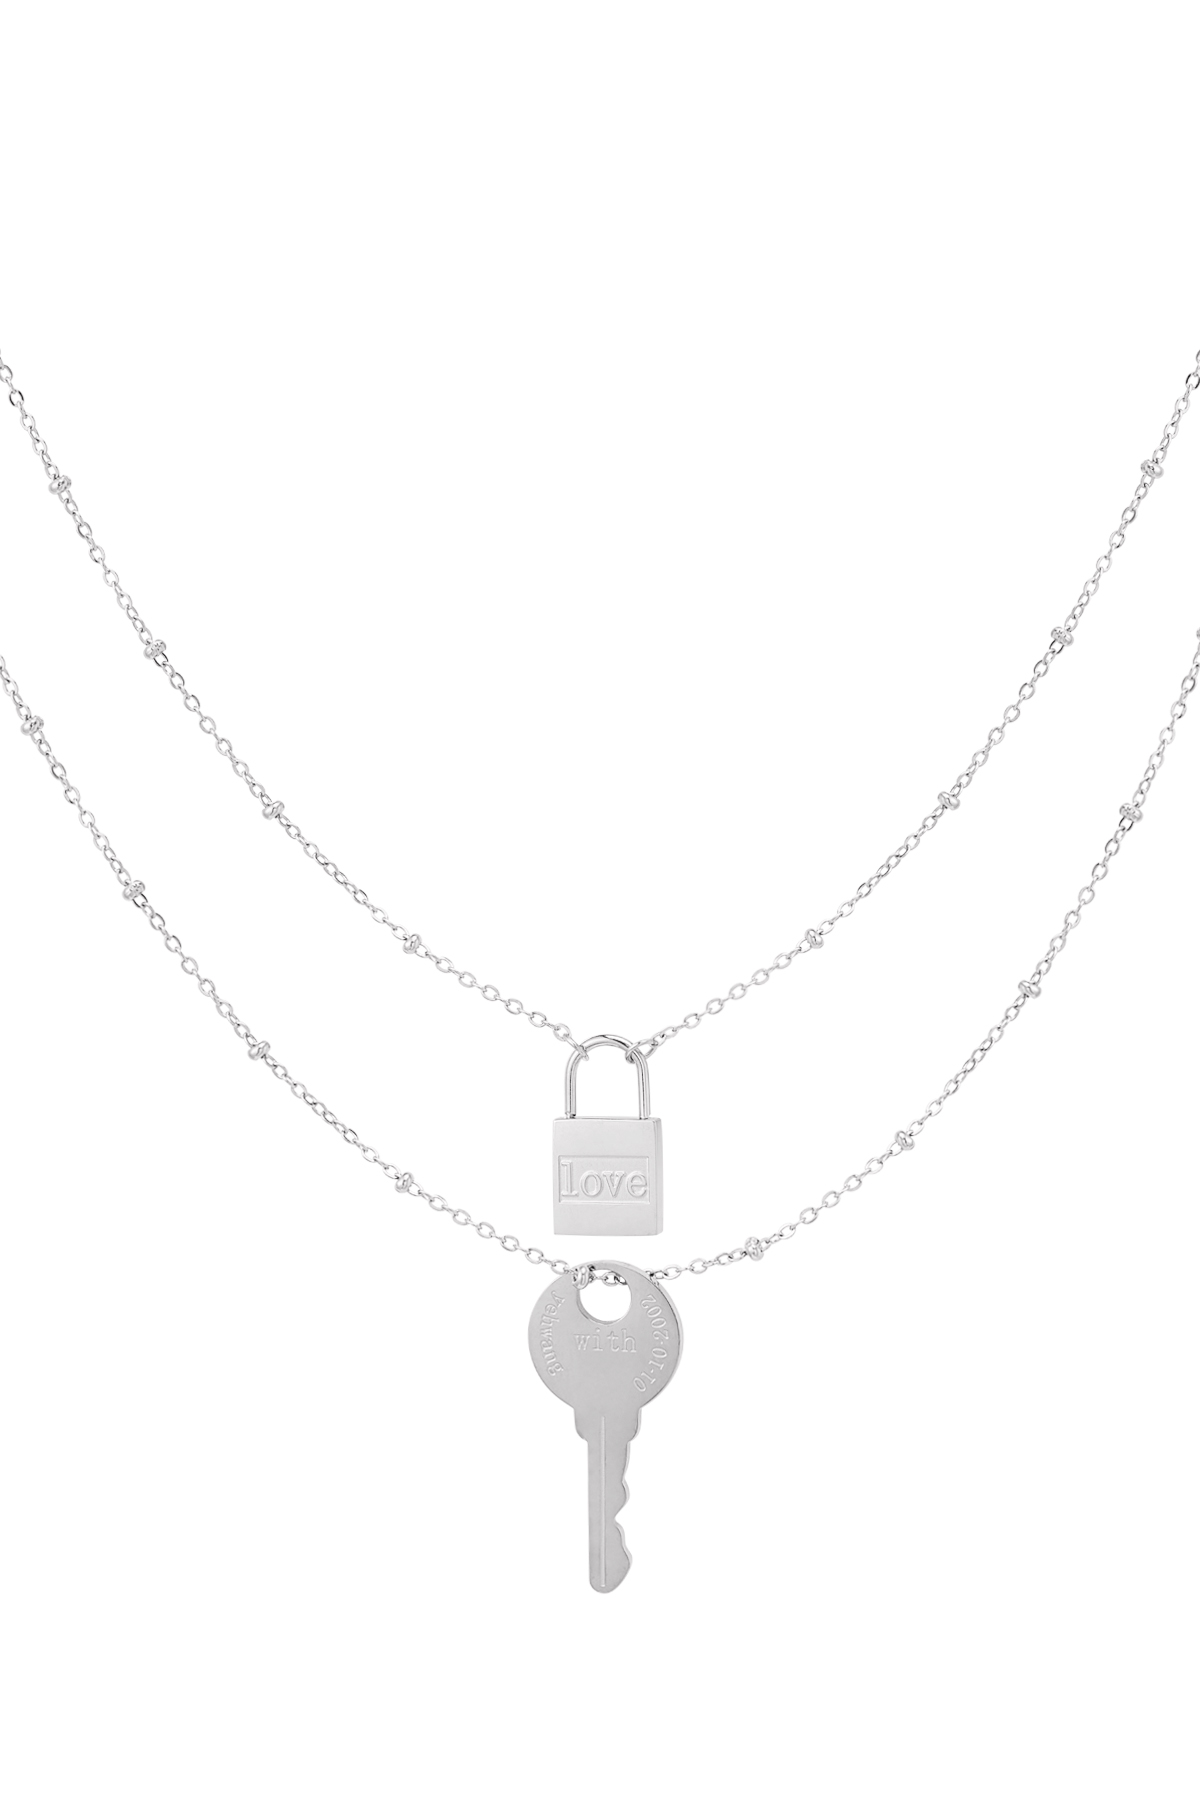 Schlüssel und Schloss mit Doppelkette - silberner Edelstahl